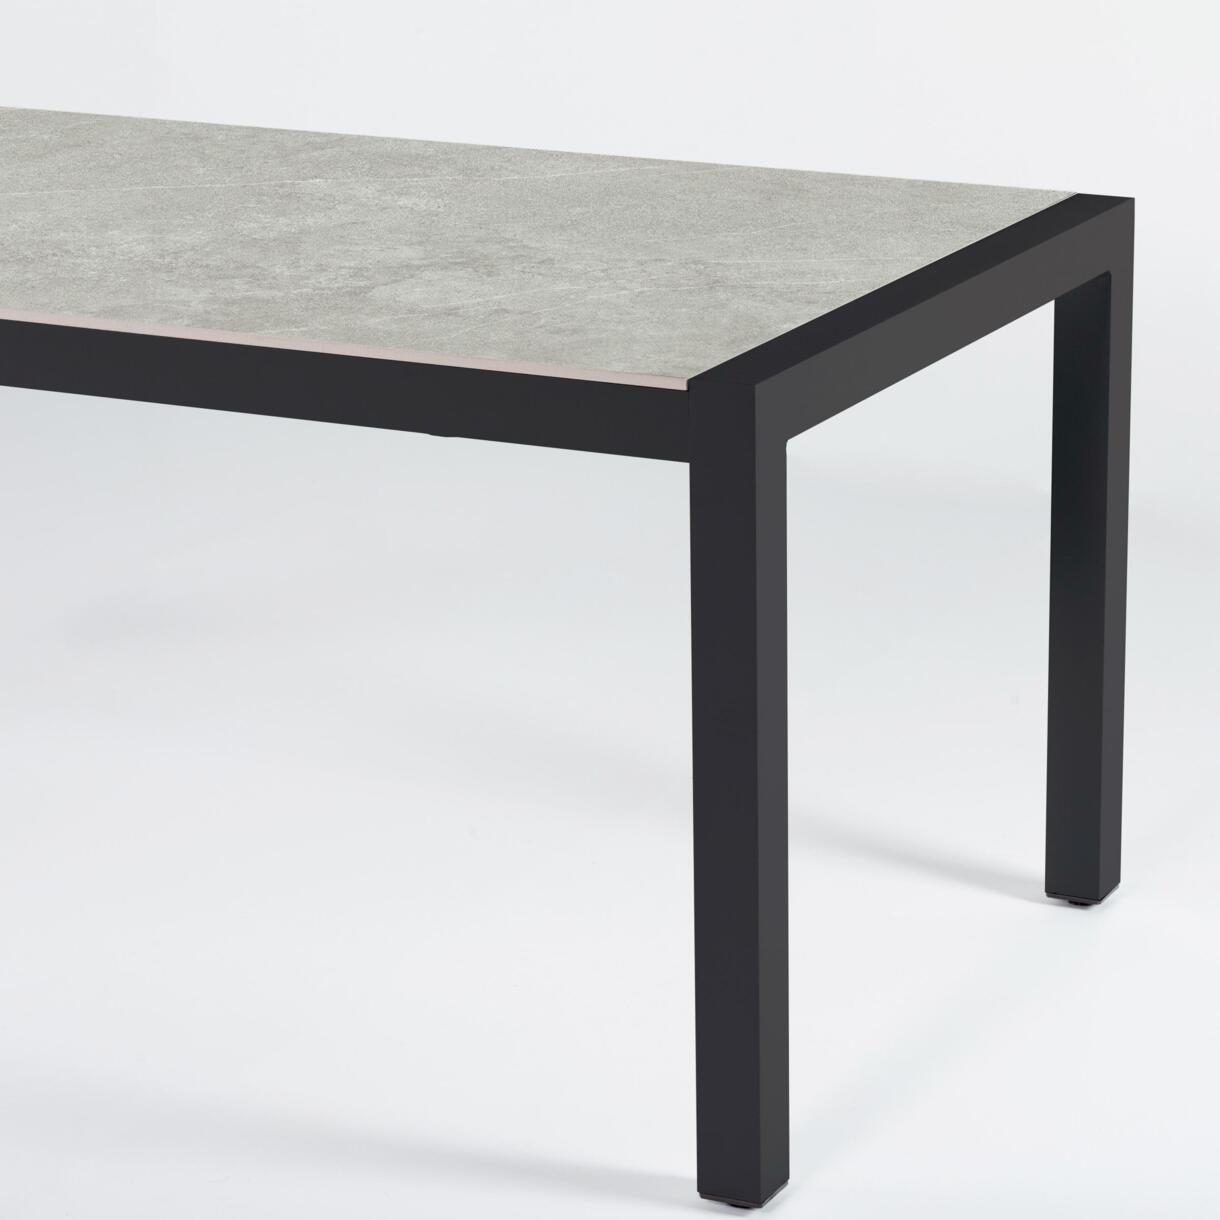 Table de jardin 6 places Aluminium/Céramique Modena (150 x 75 cm) - Gris anthracite/Gris clair 6